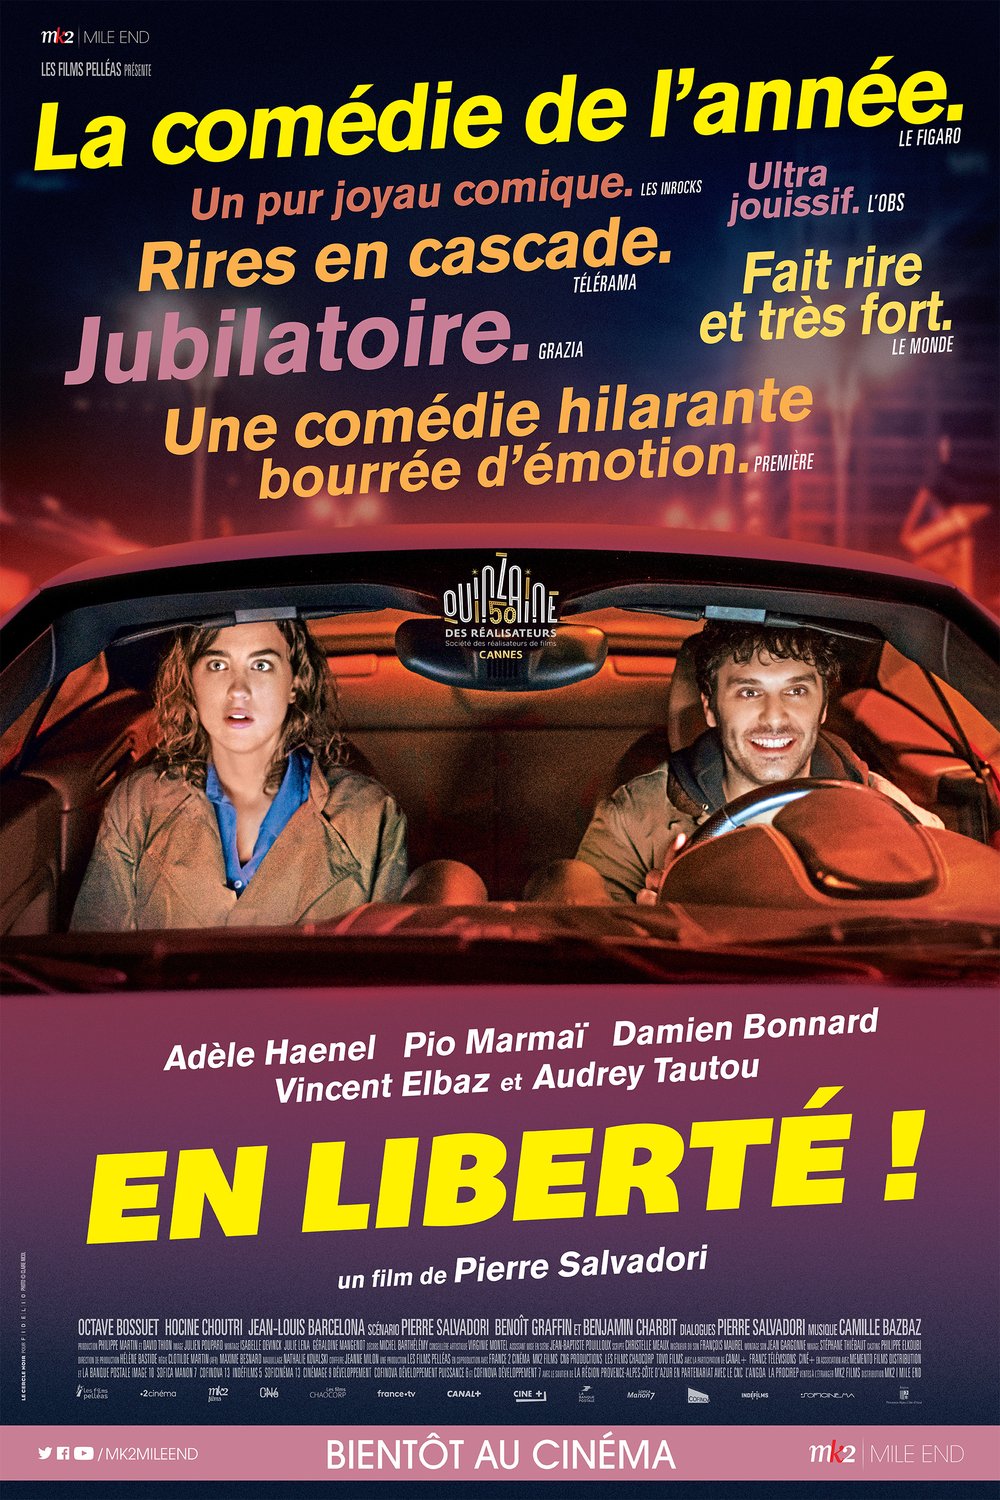 Poster of the movie En liberté!